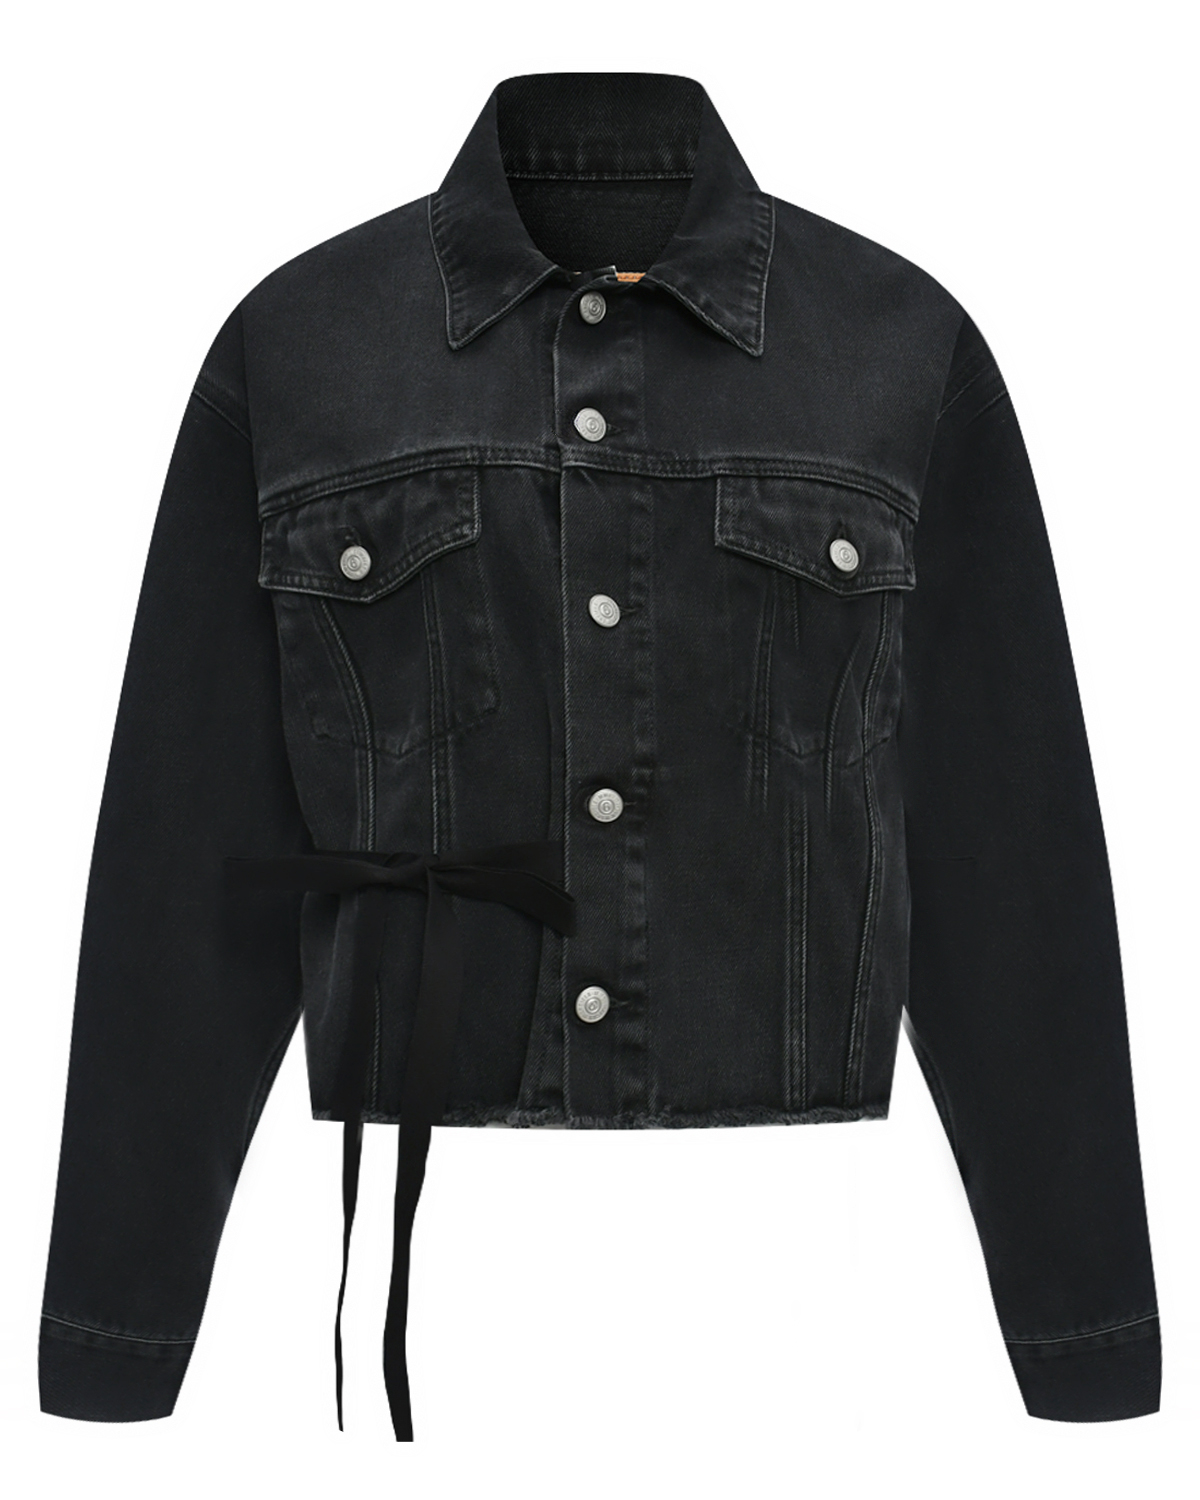 Джинсовая куртка, черная MM6 Maison Margiela футболка базовая черная с лого mm6 maison margiela